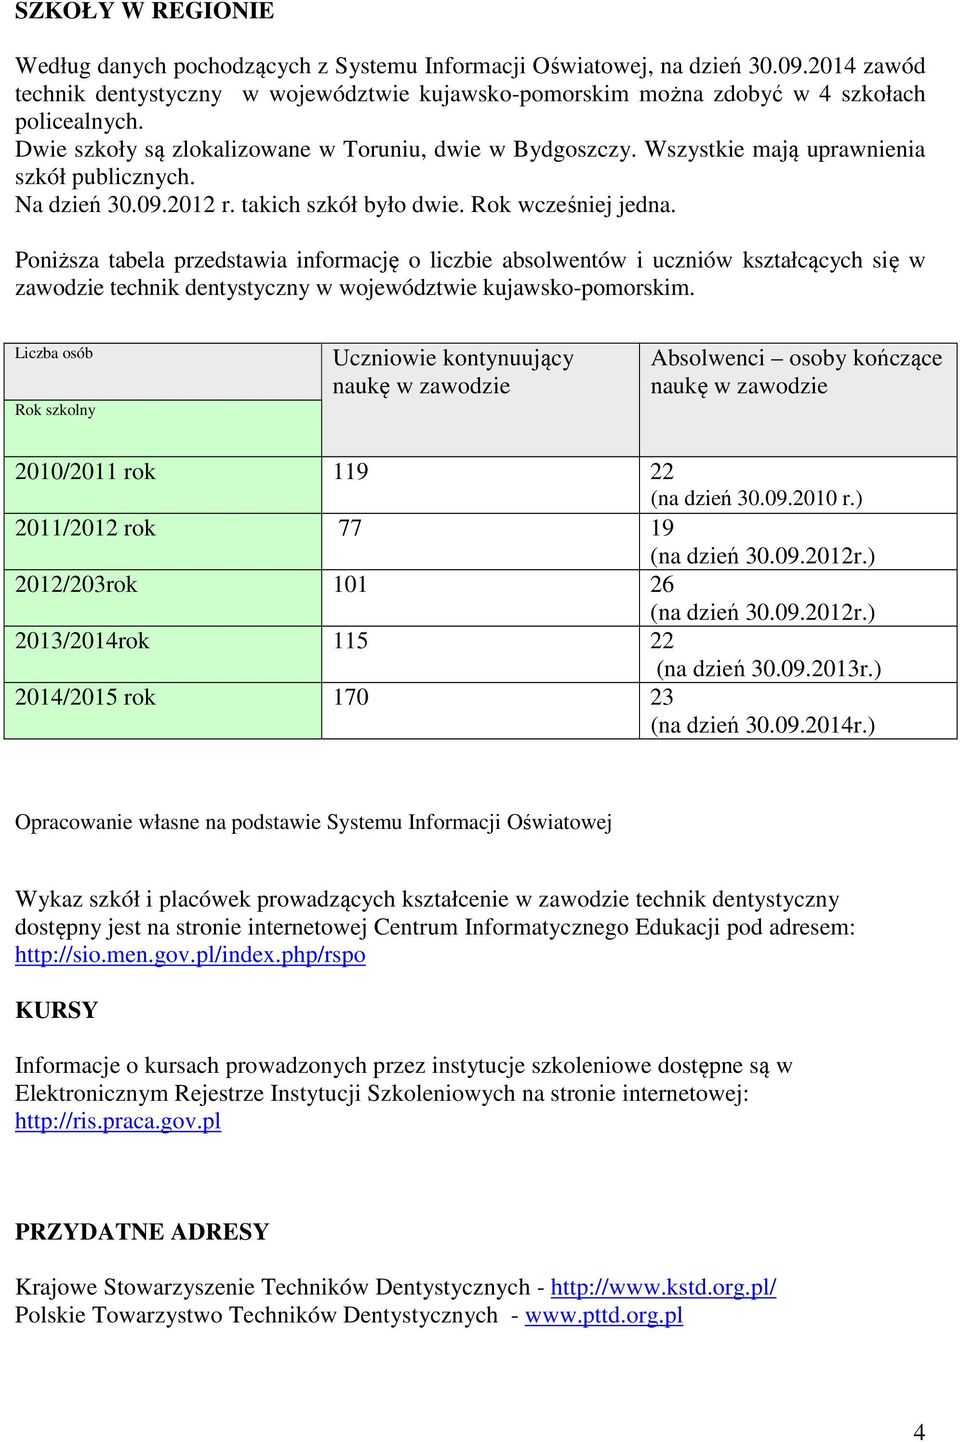 Poniższa tabela przedstawia informację o liczbie absolwentów i uczniów kształcących się w zawodzie technik dentystyczny w województwie kujawsko-pomorskim.